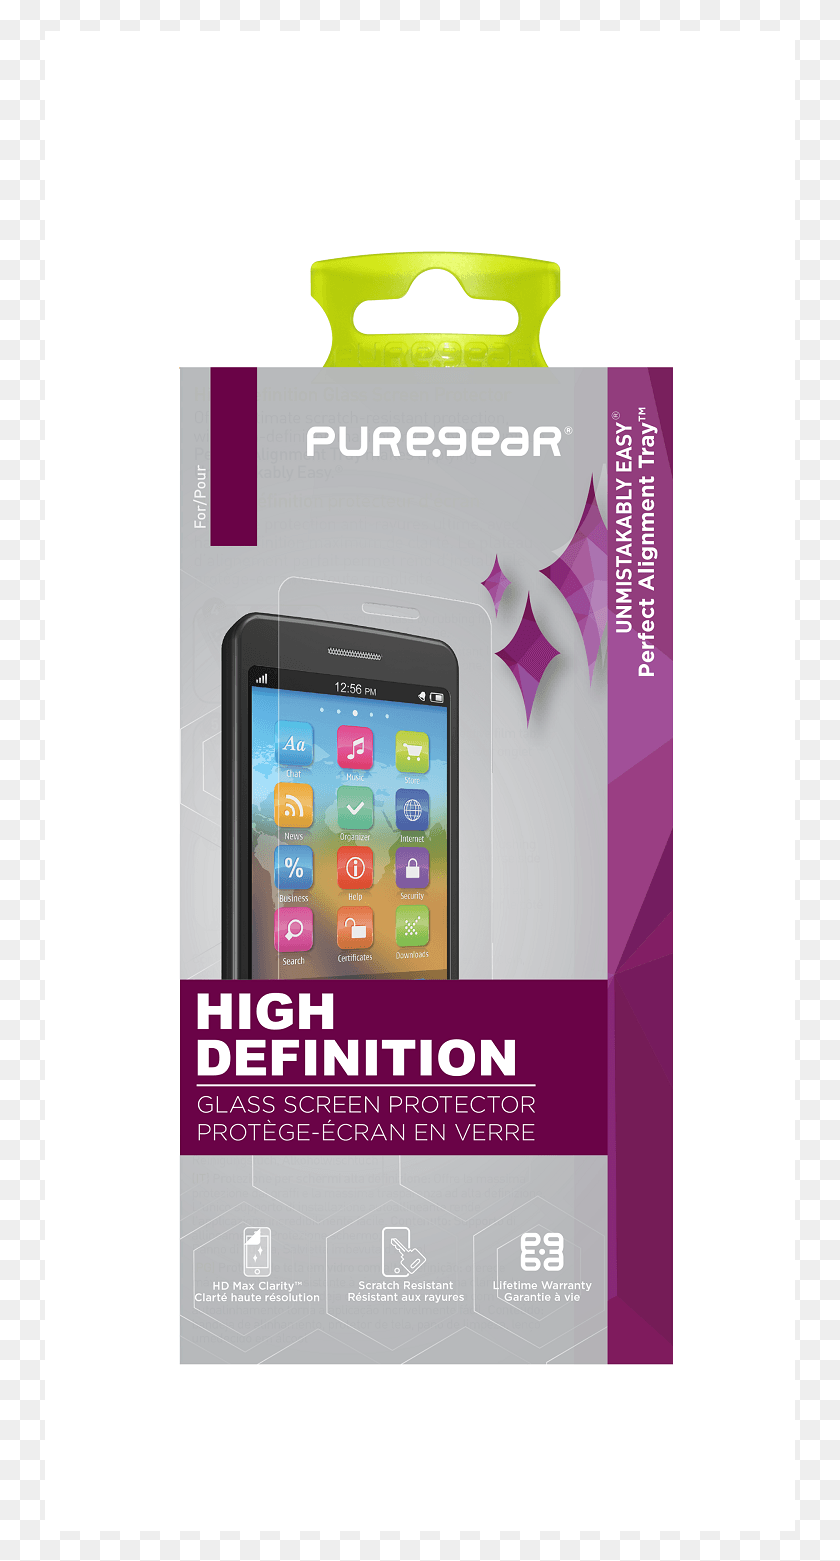 751x1501 Take Pure Gear Защитная Пленка Для Экрана Высокой Четкости, Мобильный Телефон, Телефон, Электроника Png Скачать